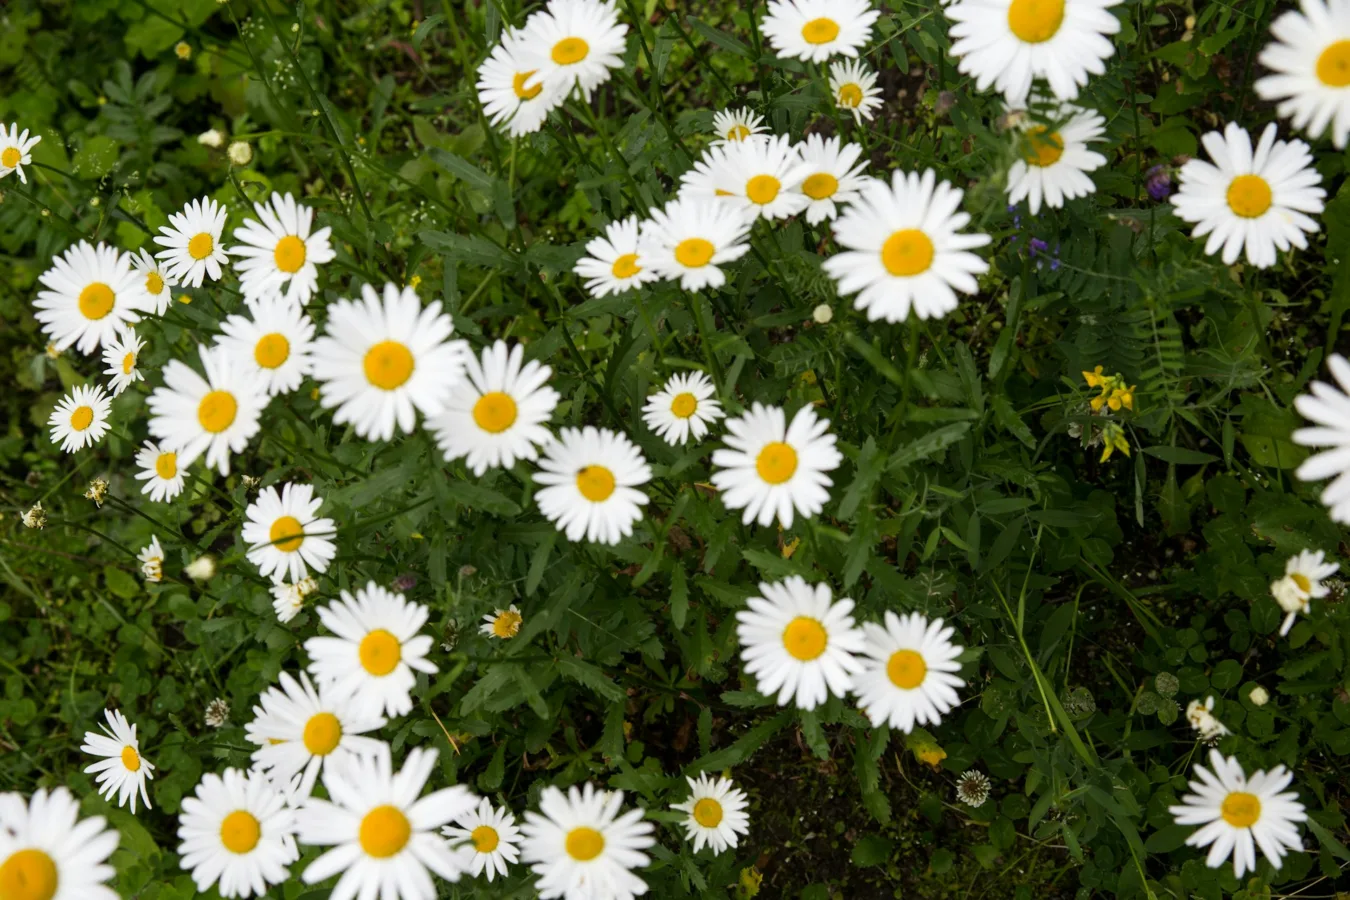 Łąka pełna białych kwiatów rumianku z żółtymi środkami.